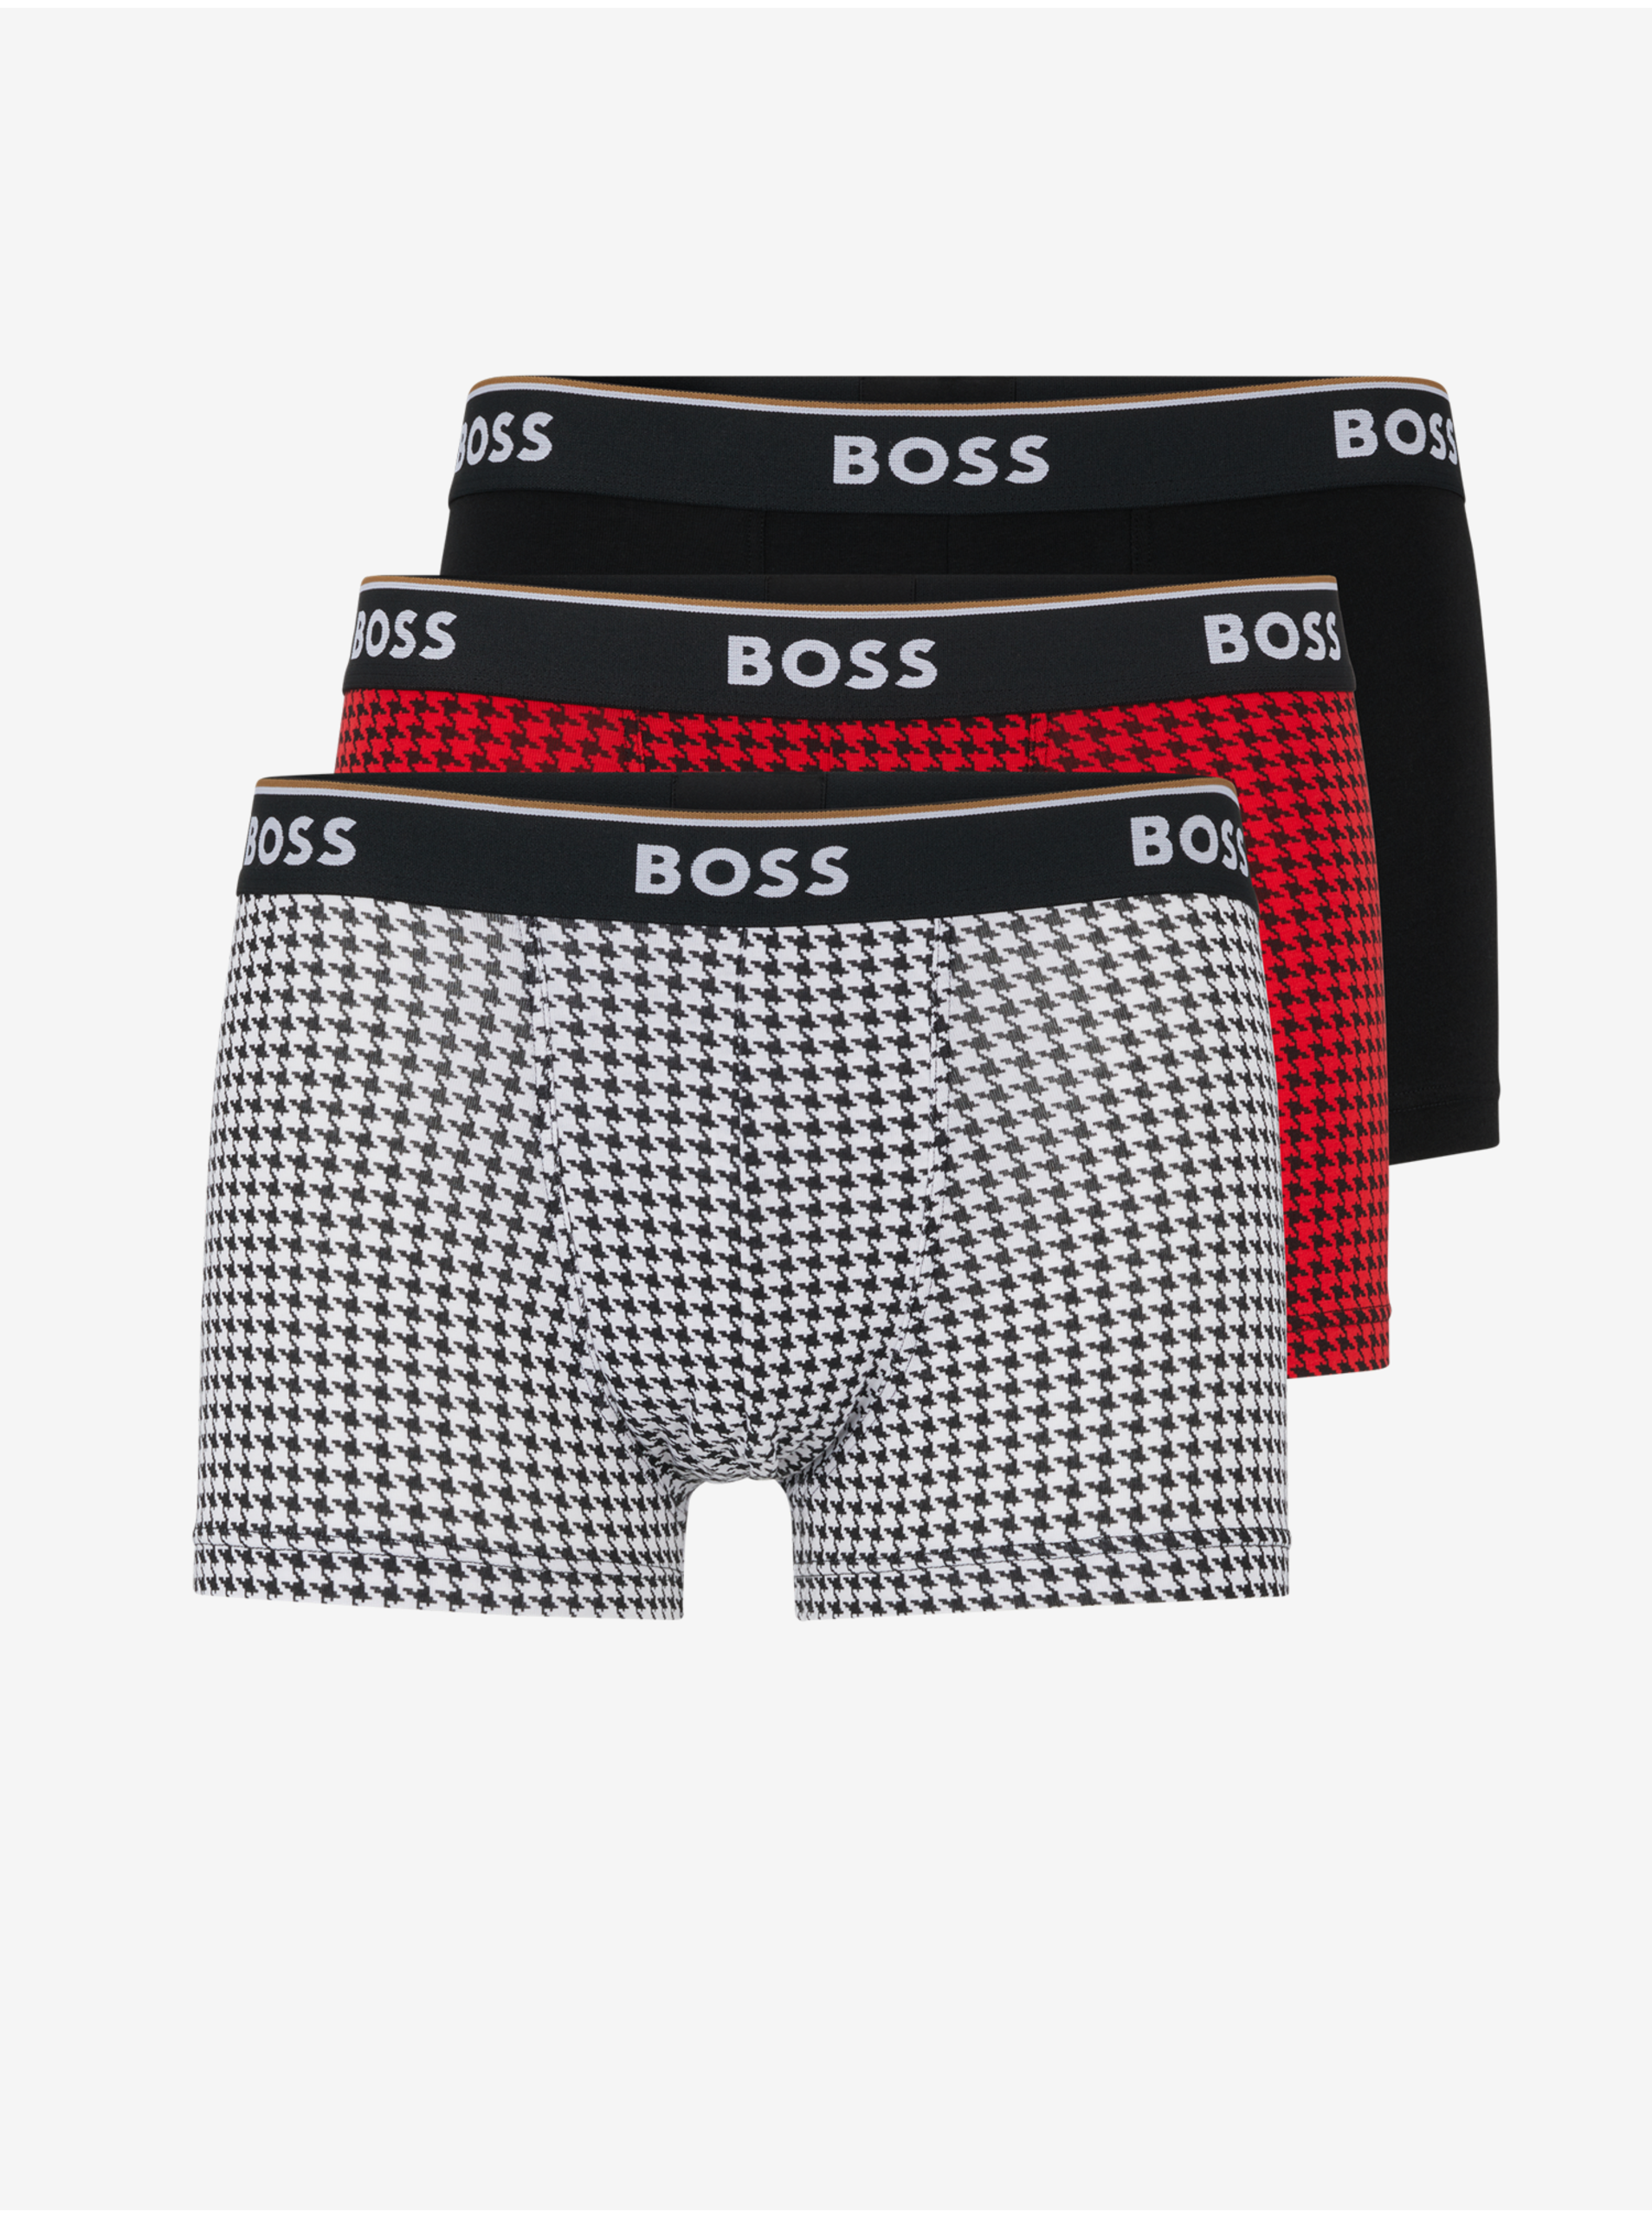 Lacno Boxerky pre mužov BOSS - biela, červená, čierna